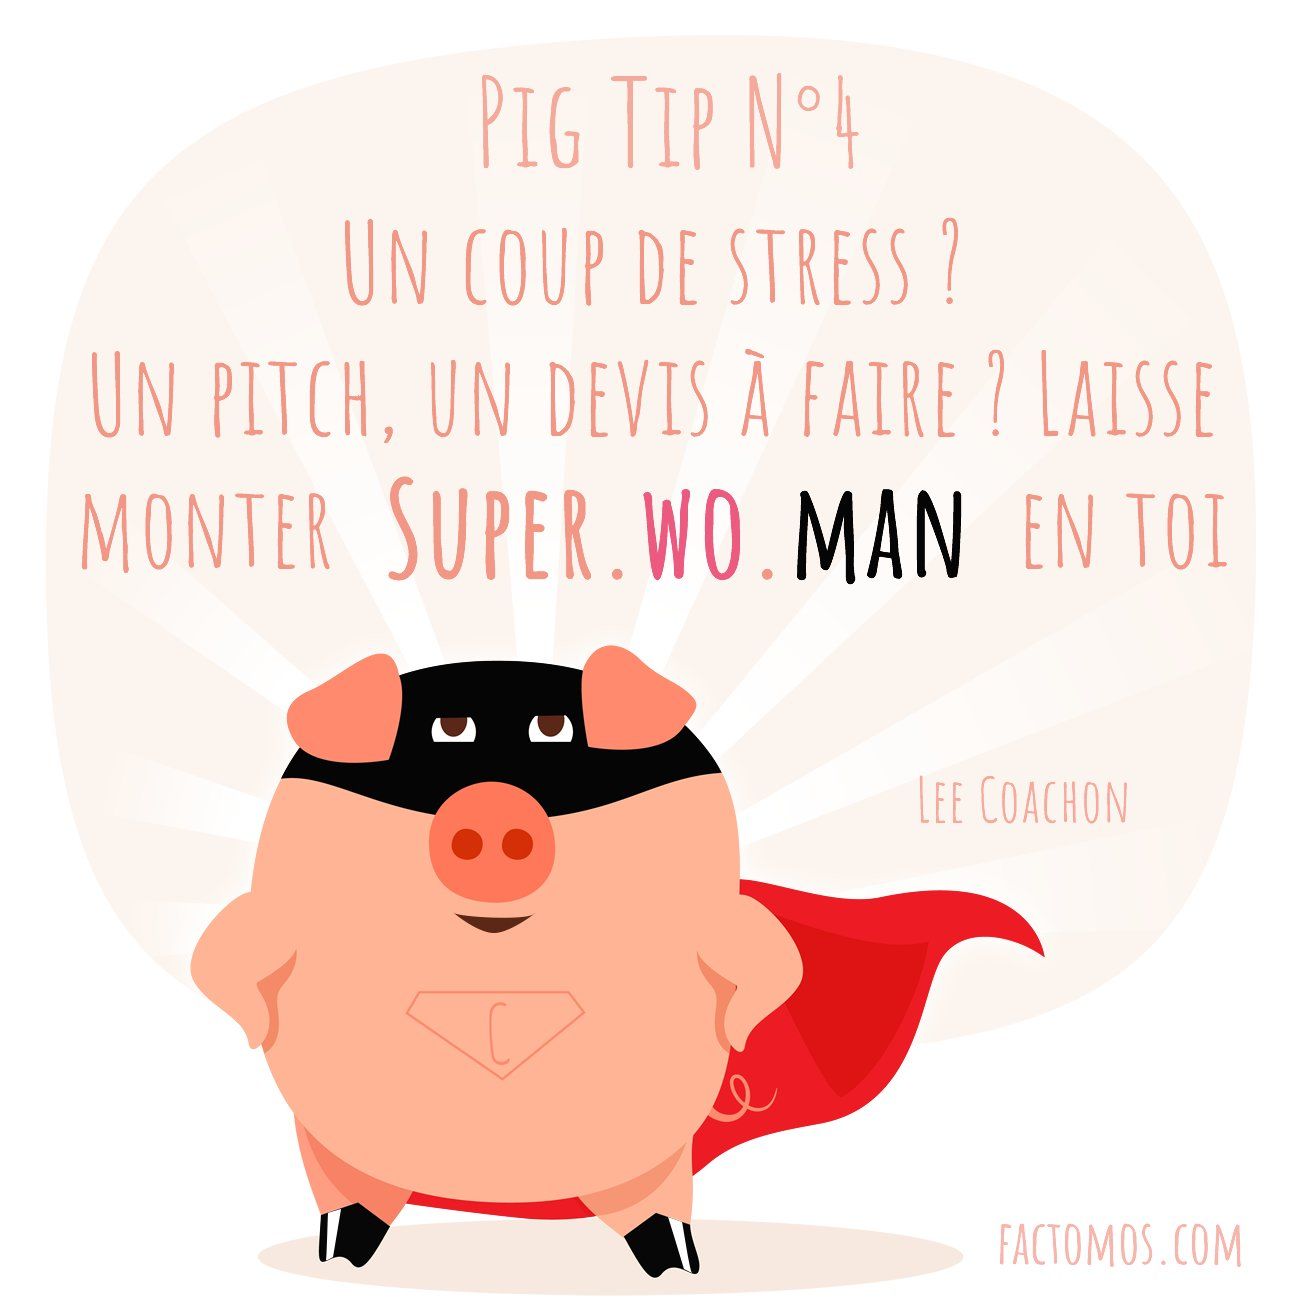 Pig Tip #4